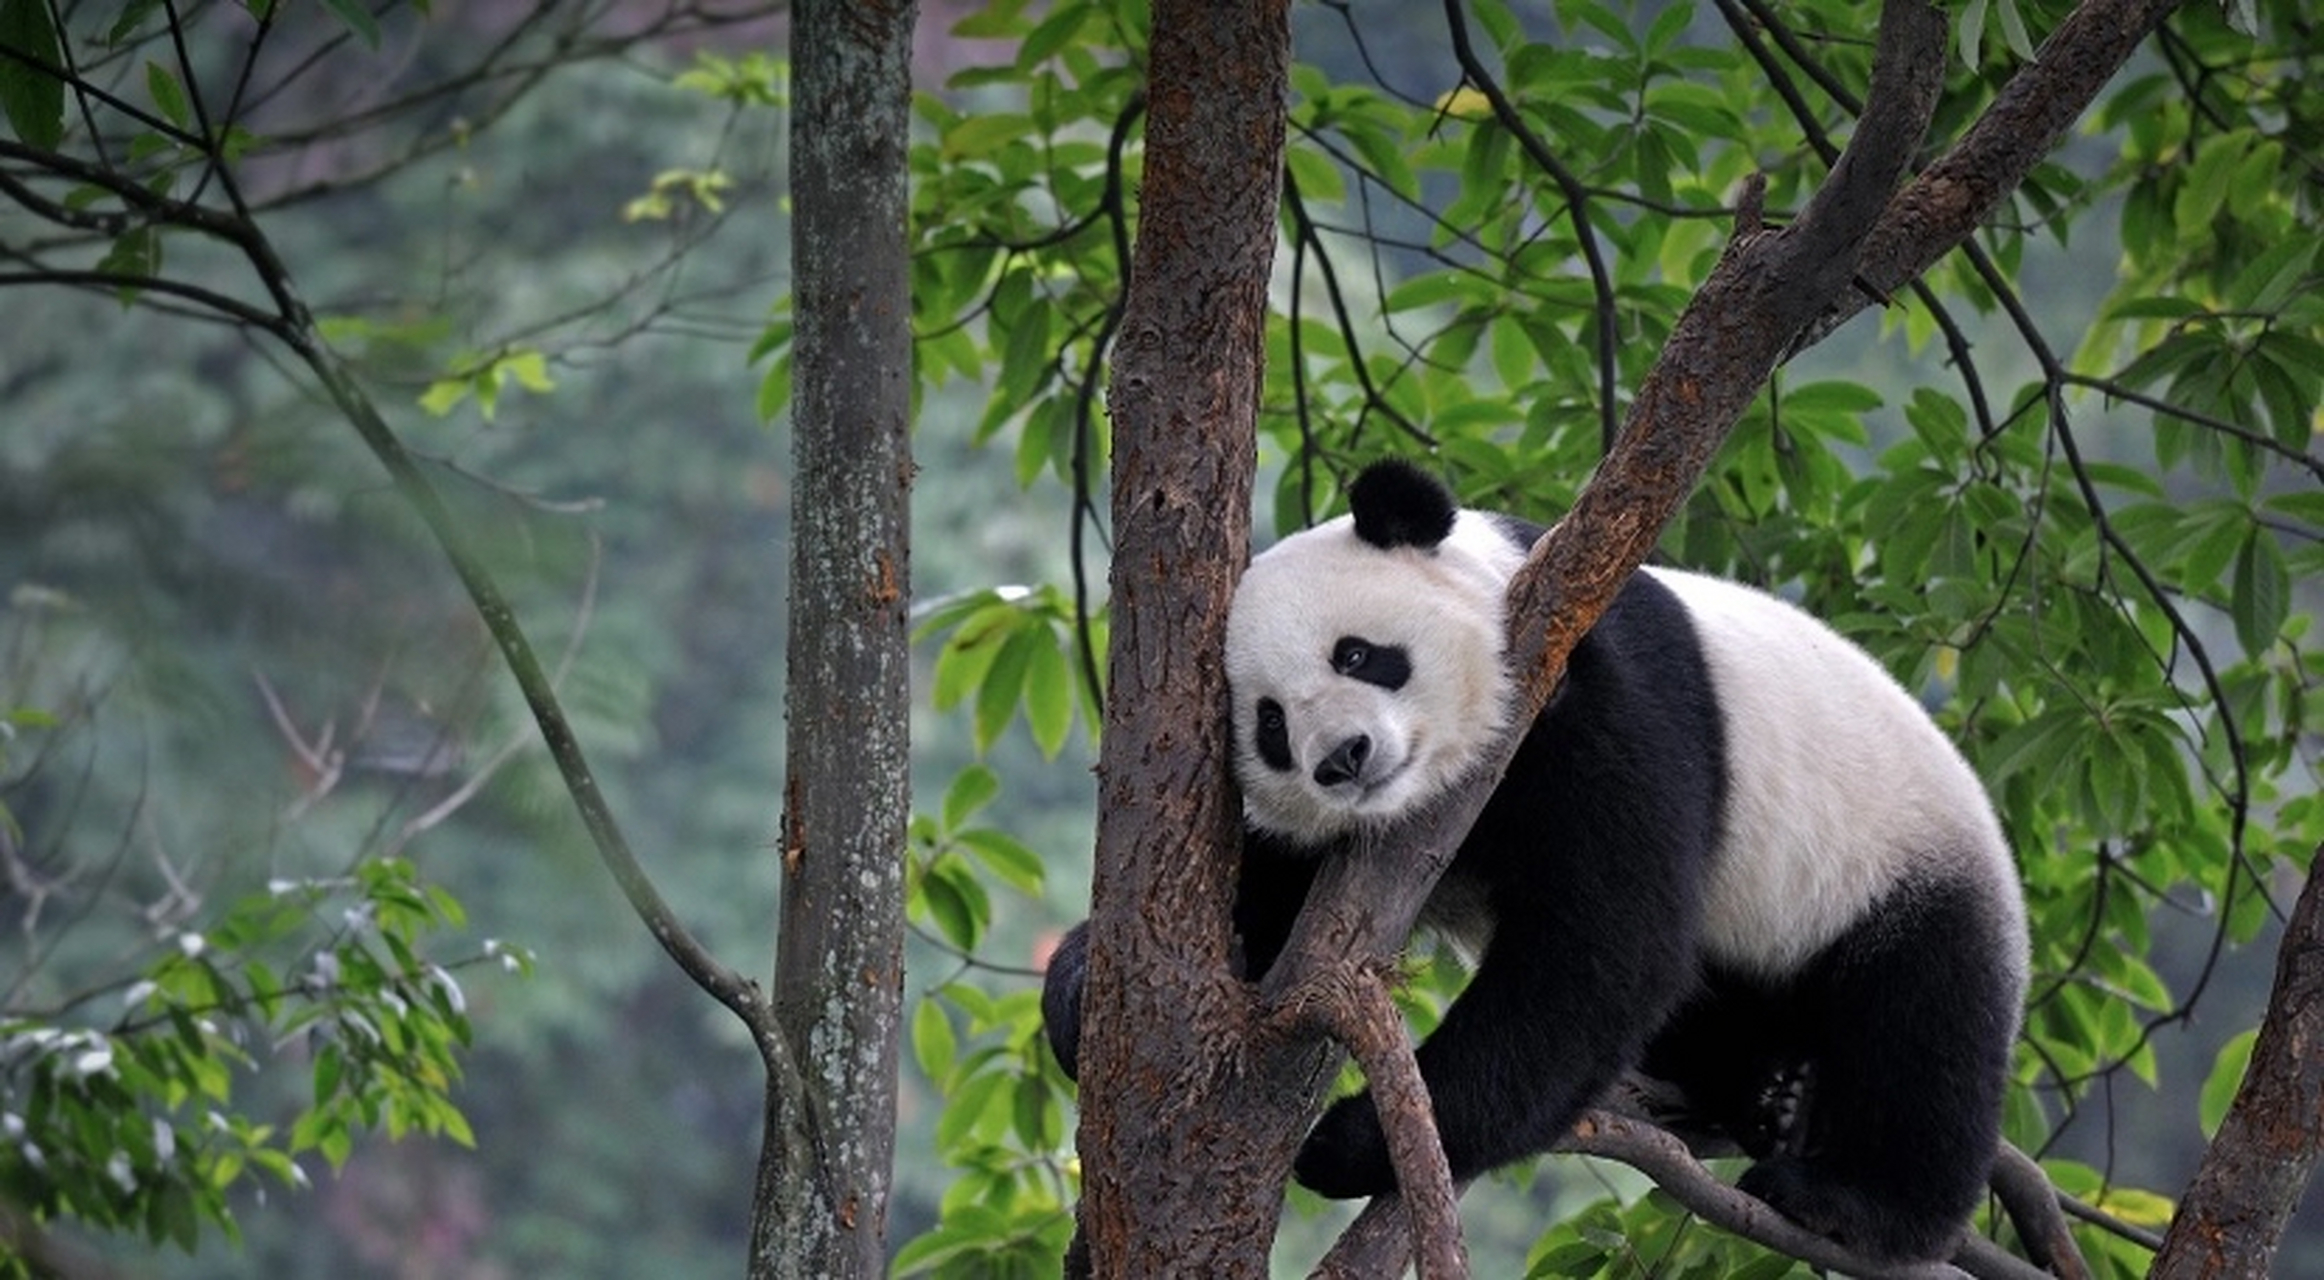 大熊猫(学名:ailuropoda melanoleuca):属于熊科,大熊猫属的哺乳动物